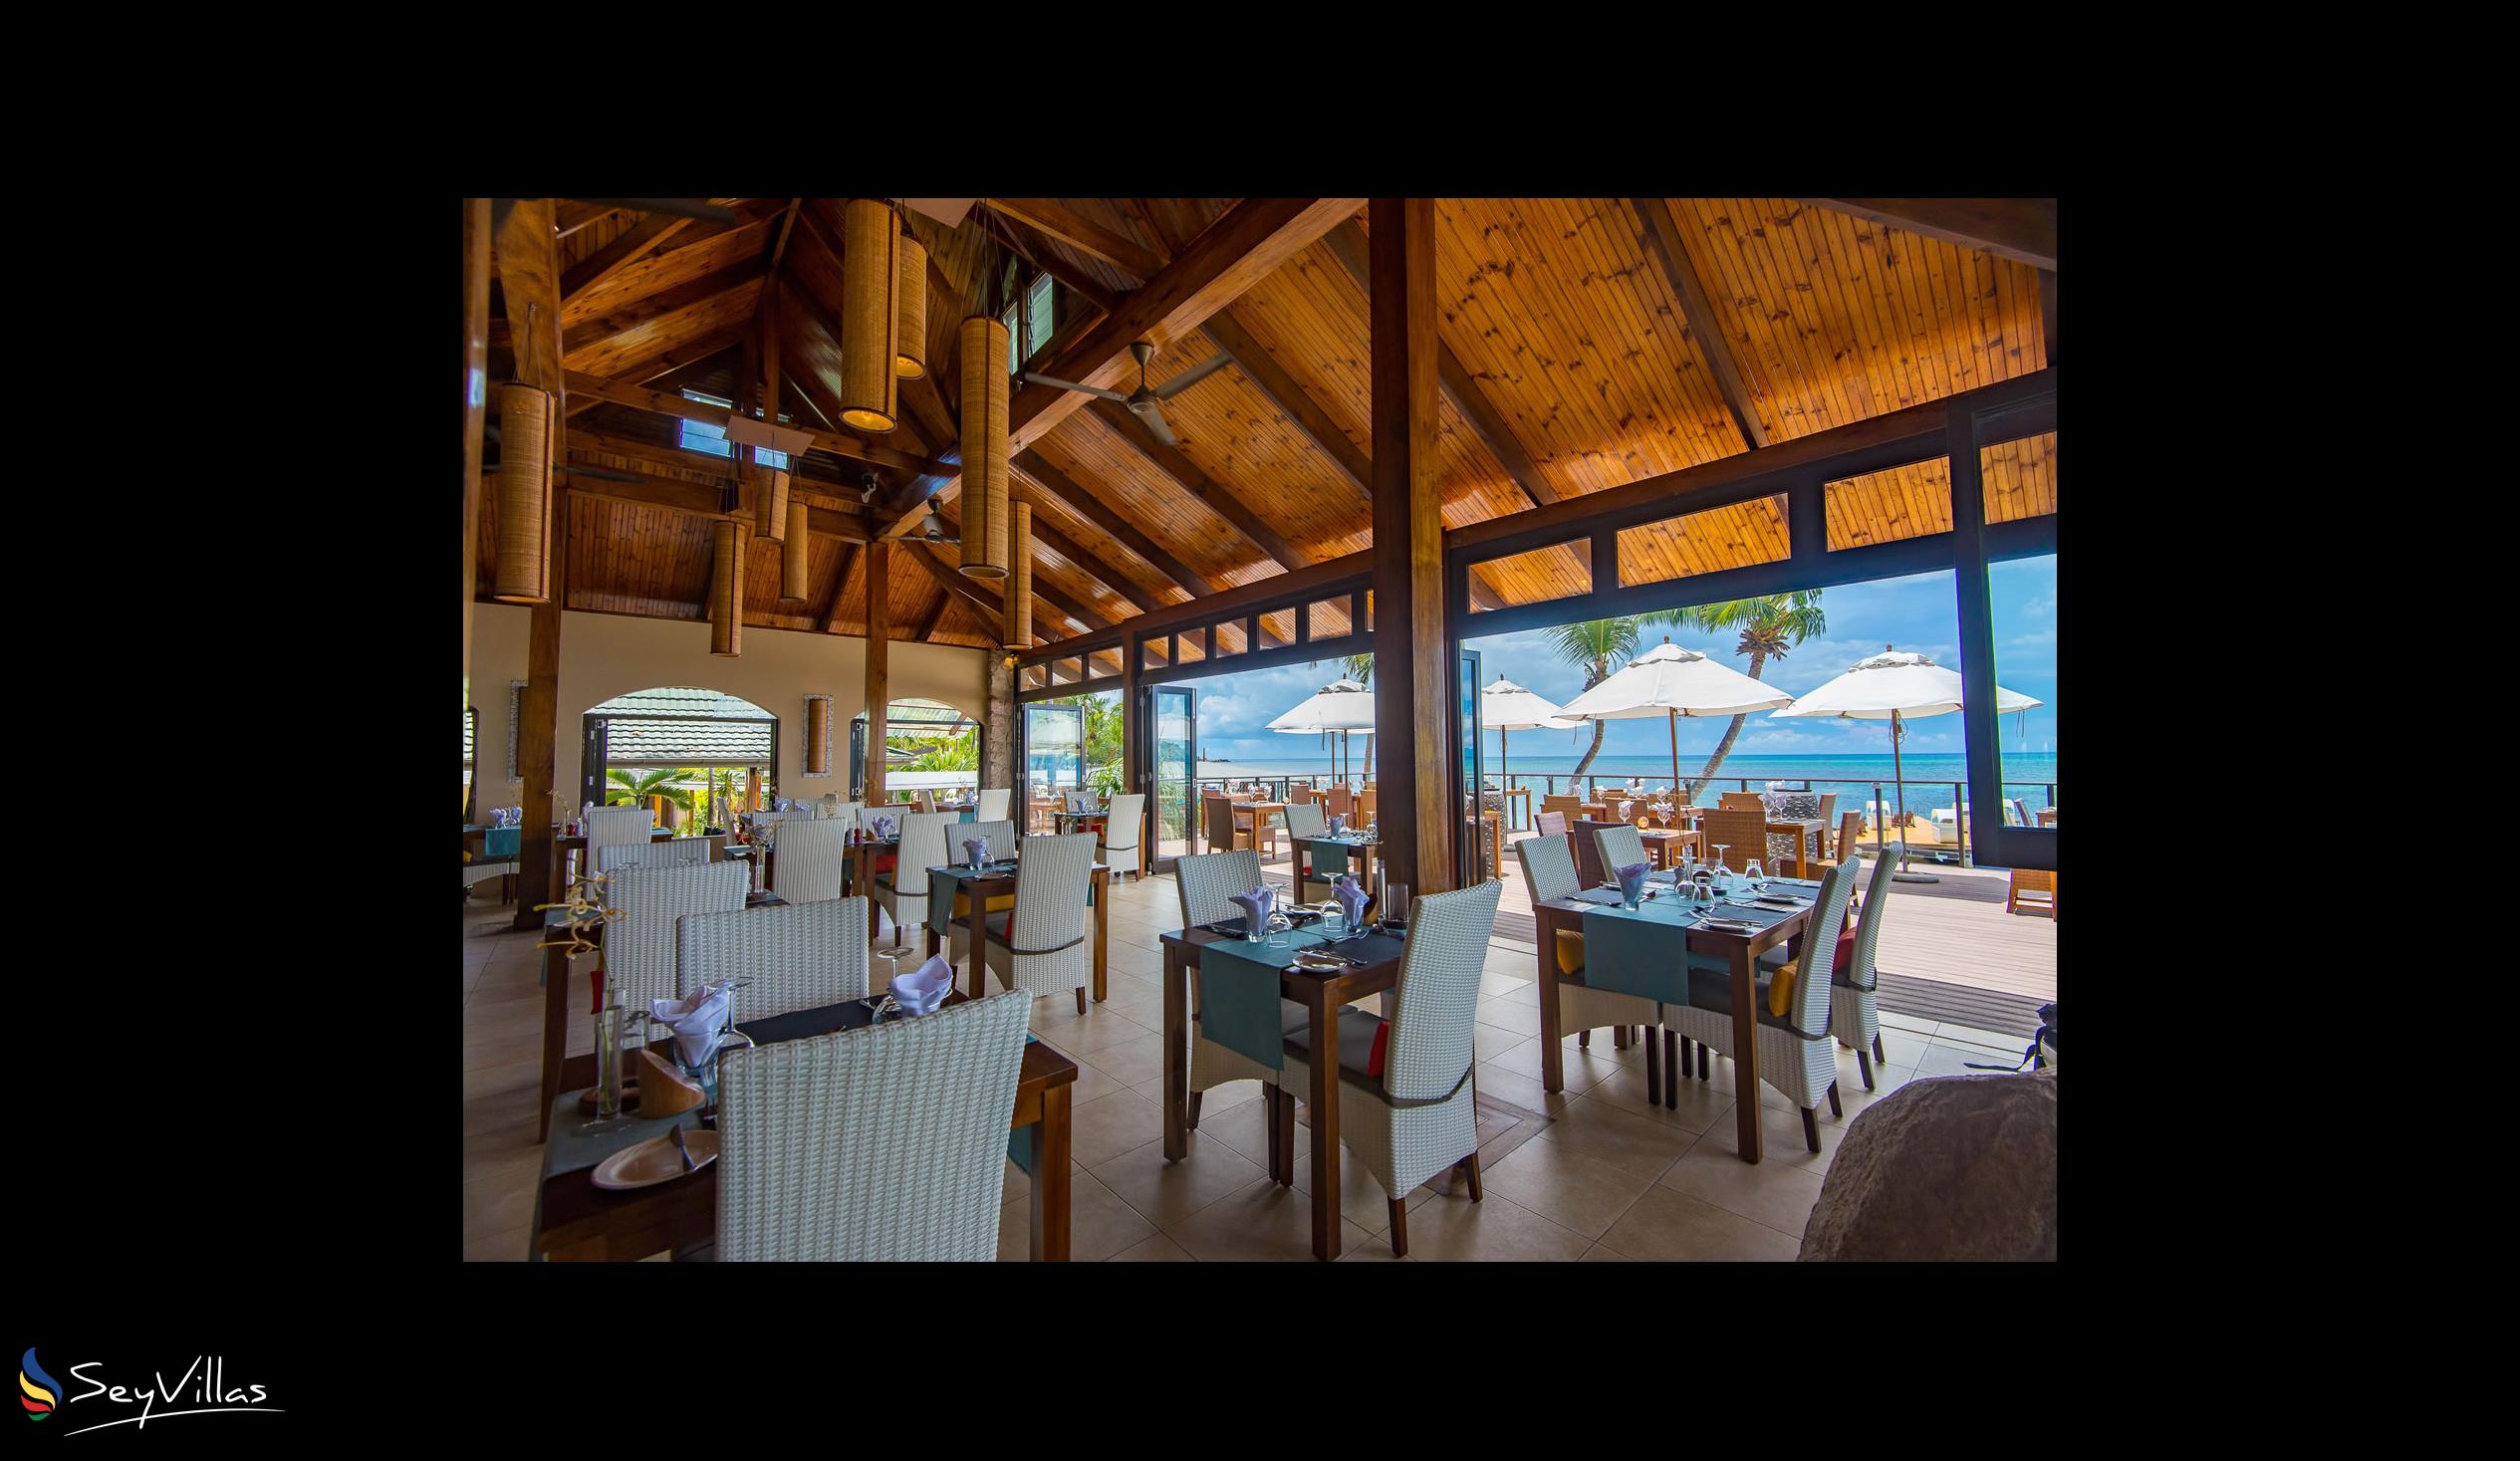 Foto 29: Coco de Mer & Black Parrot Suites - Innenbereich - Praslin (Seychellen)